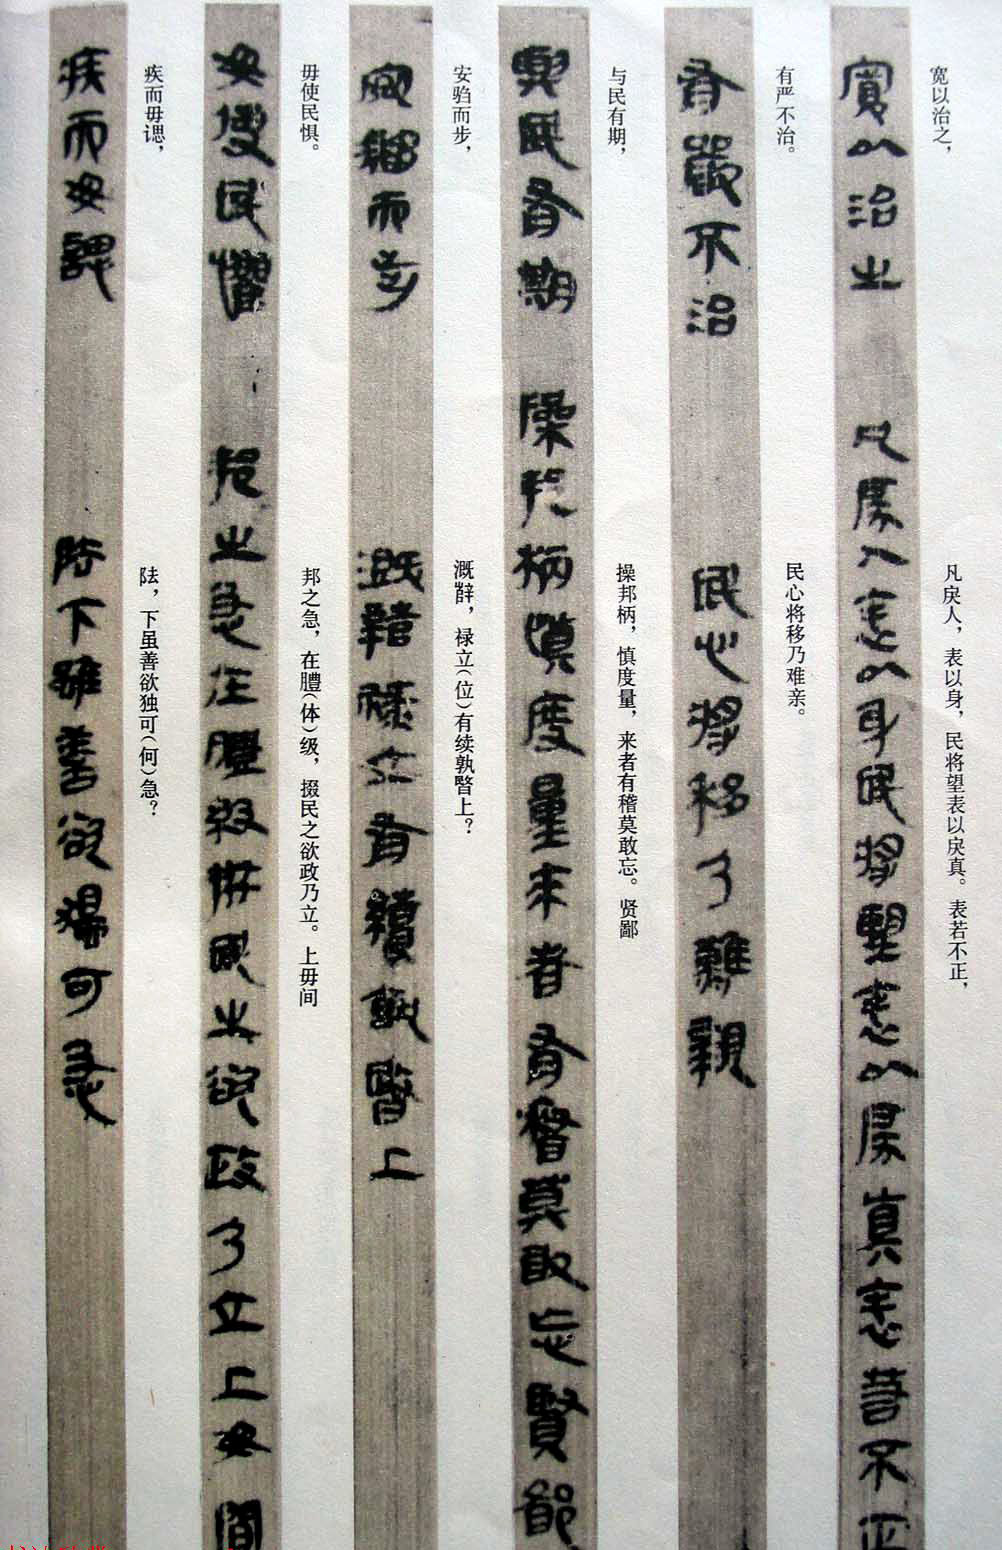 秦古隶《云梦睡虎地秦墓竹简》,两千多年前的文字墨迹